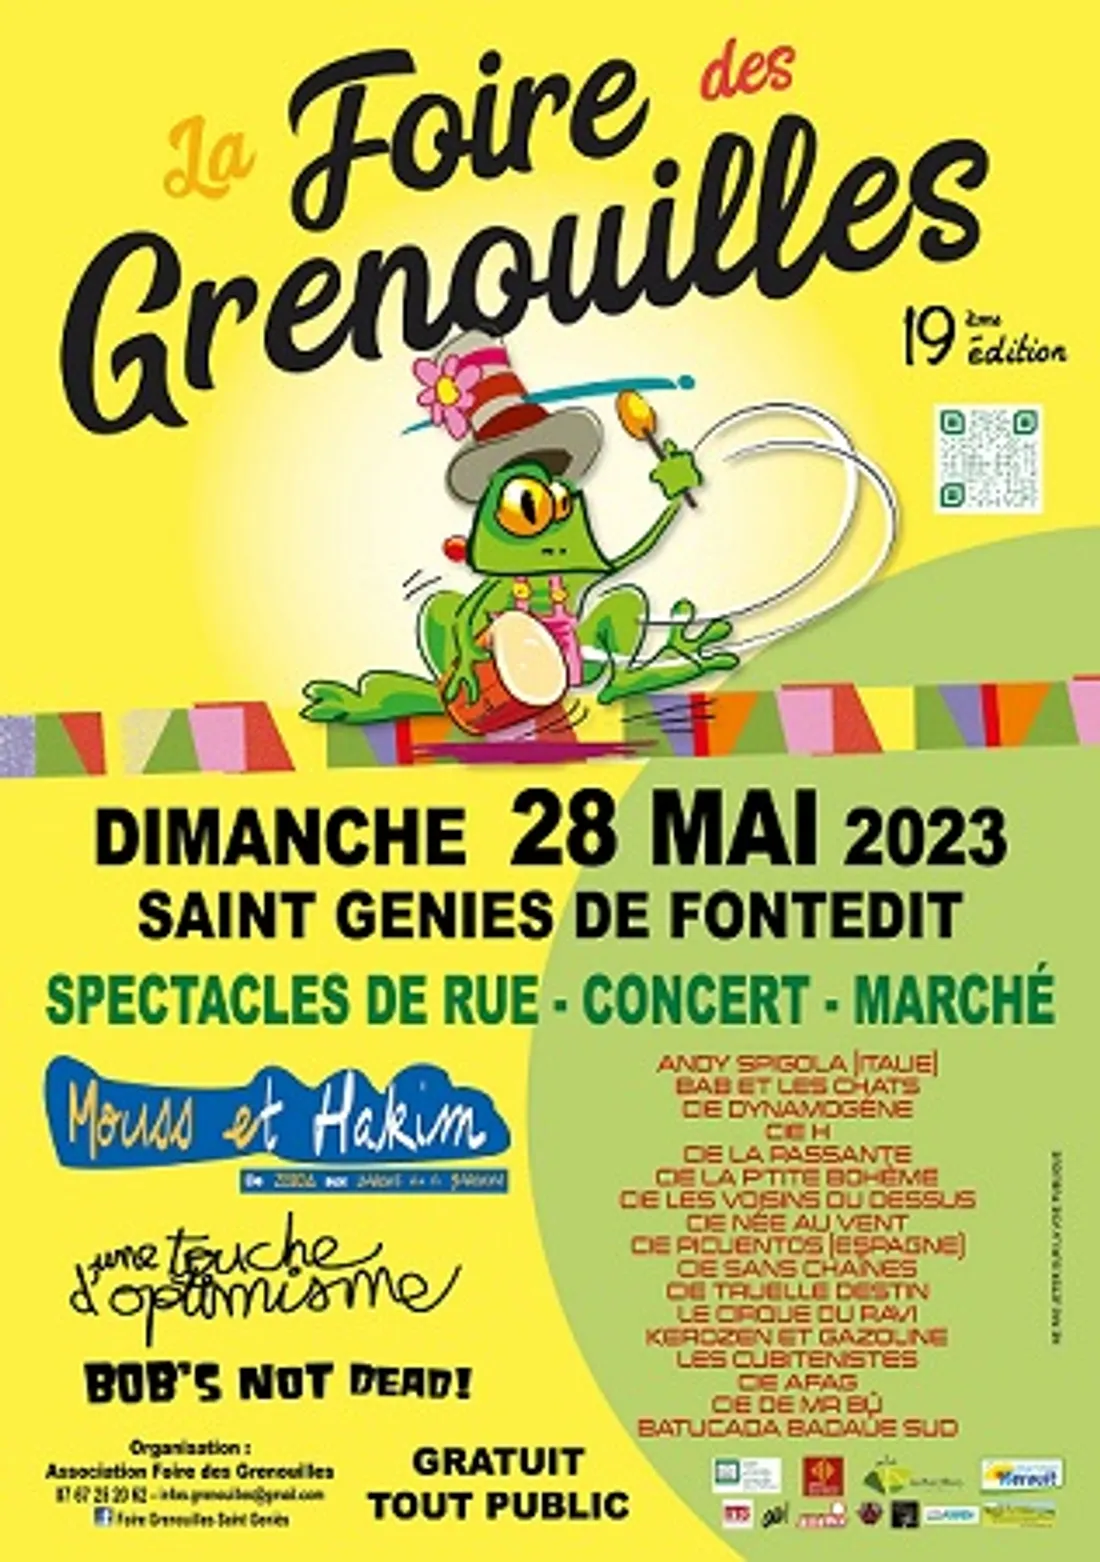 La Foire des grenouilles de Saint-Géniès de Fontedit